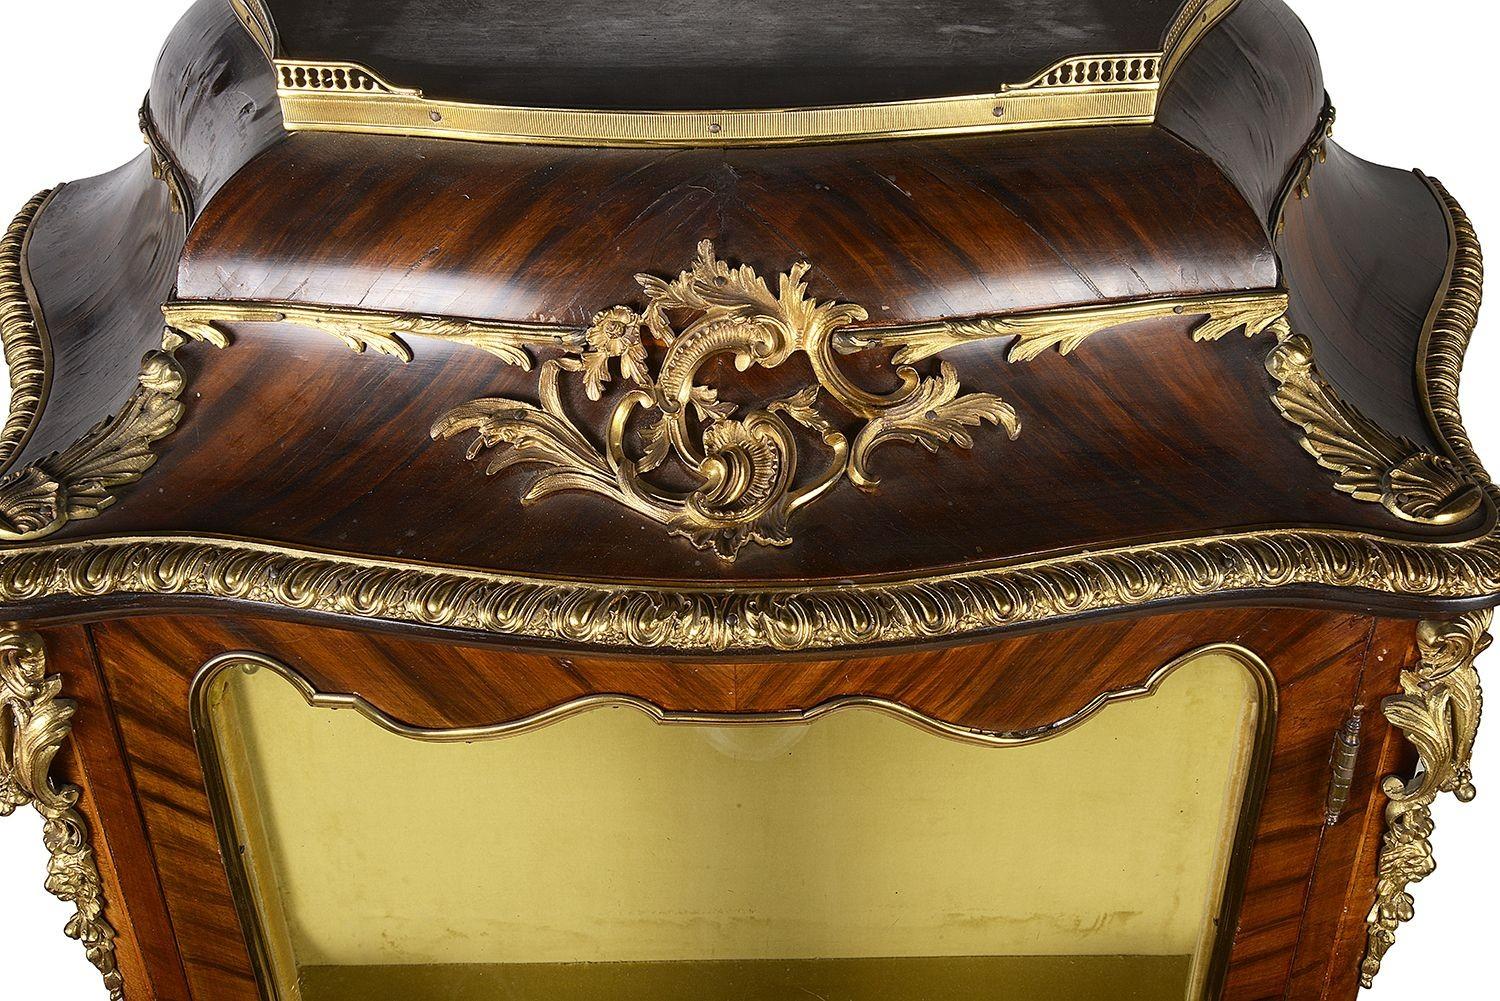 Ein Paar sehr gute Qualität Paar des späten 19. Jahrhunderts Französisch Louis XVI-Stil Bombe Vitrinen, die jeweils mit Scroll-Blatt und Widderkopf vergoldet Ormolu beschlägt, wunderbare Intarsien + Intarsien floralen Tafeln, einzelne Türen zu